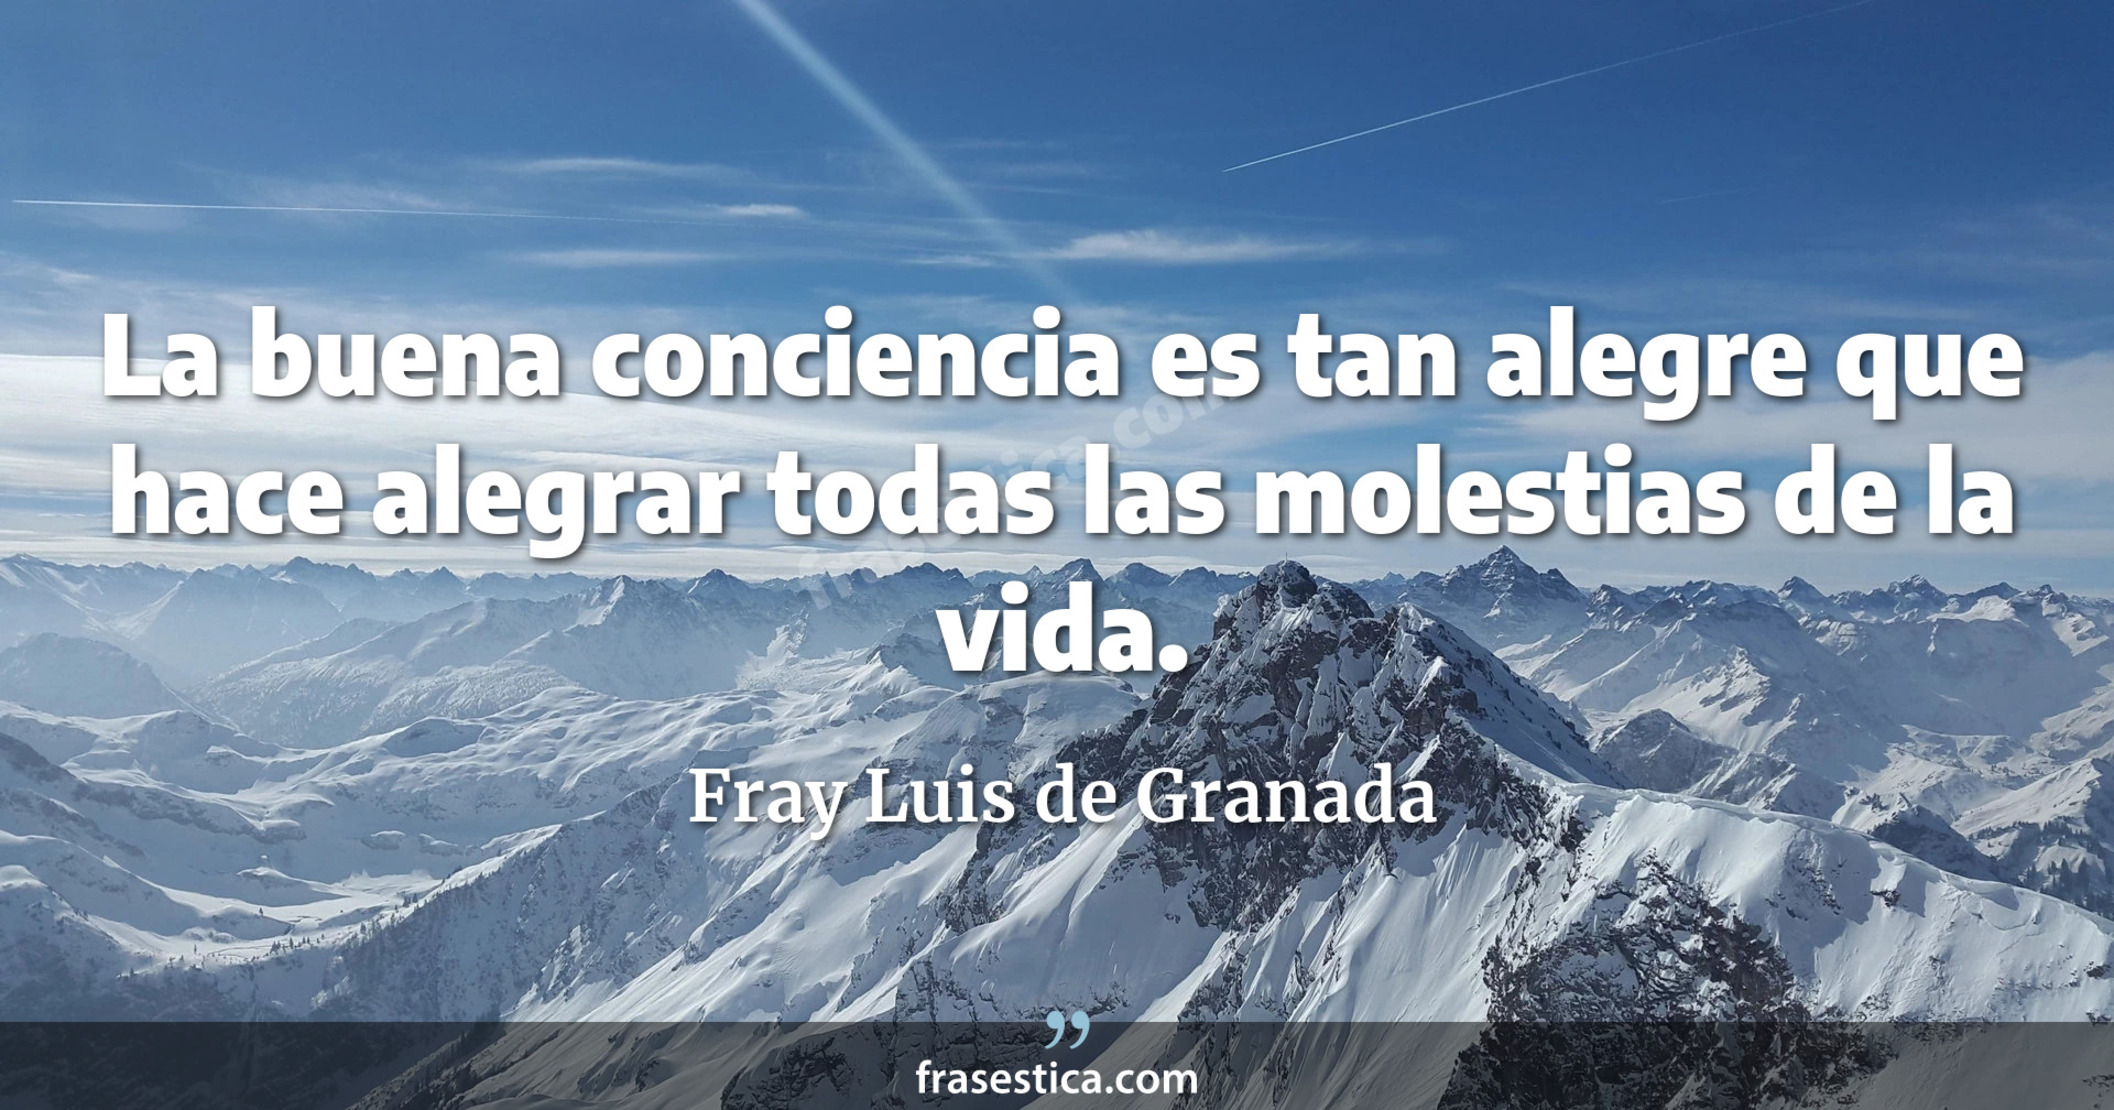 La buena conciencia es tan alegre que hace alegrar todas las molestias de la vida. - Fray Luis de Granada